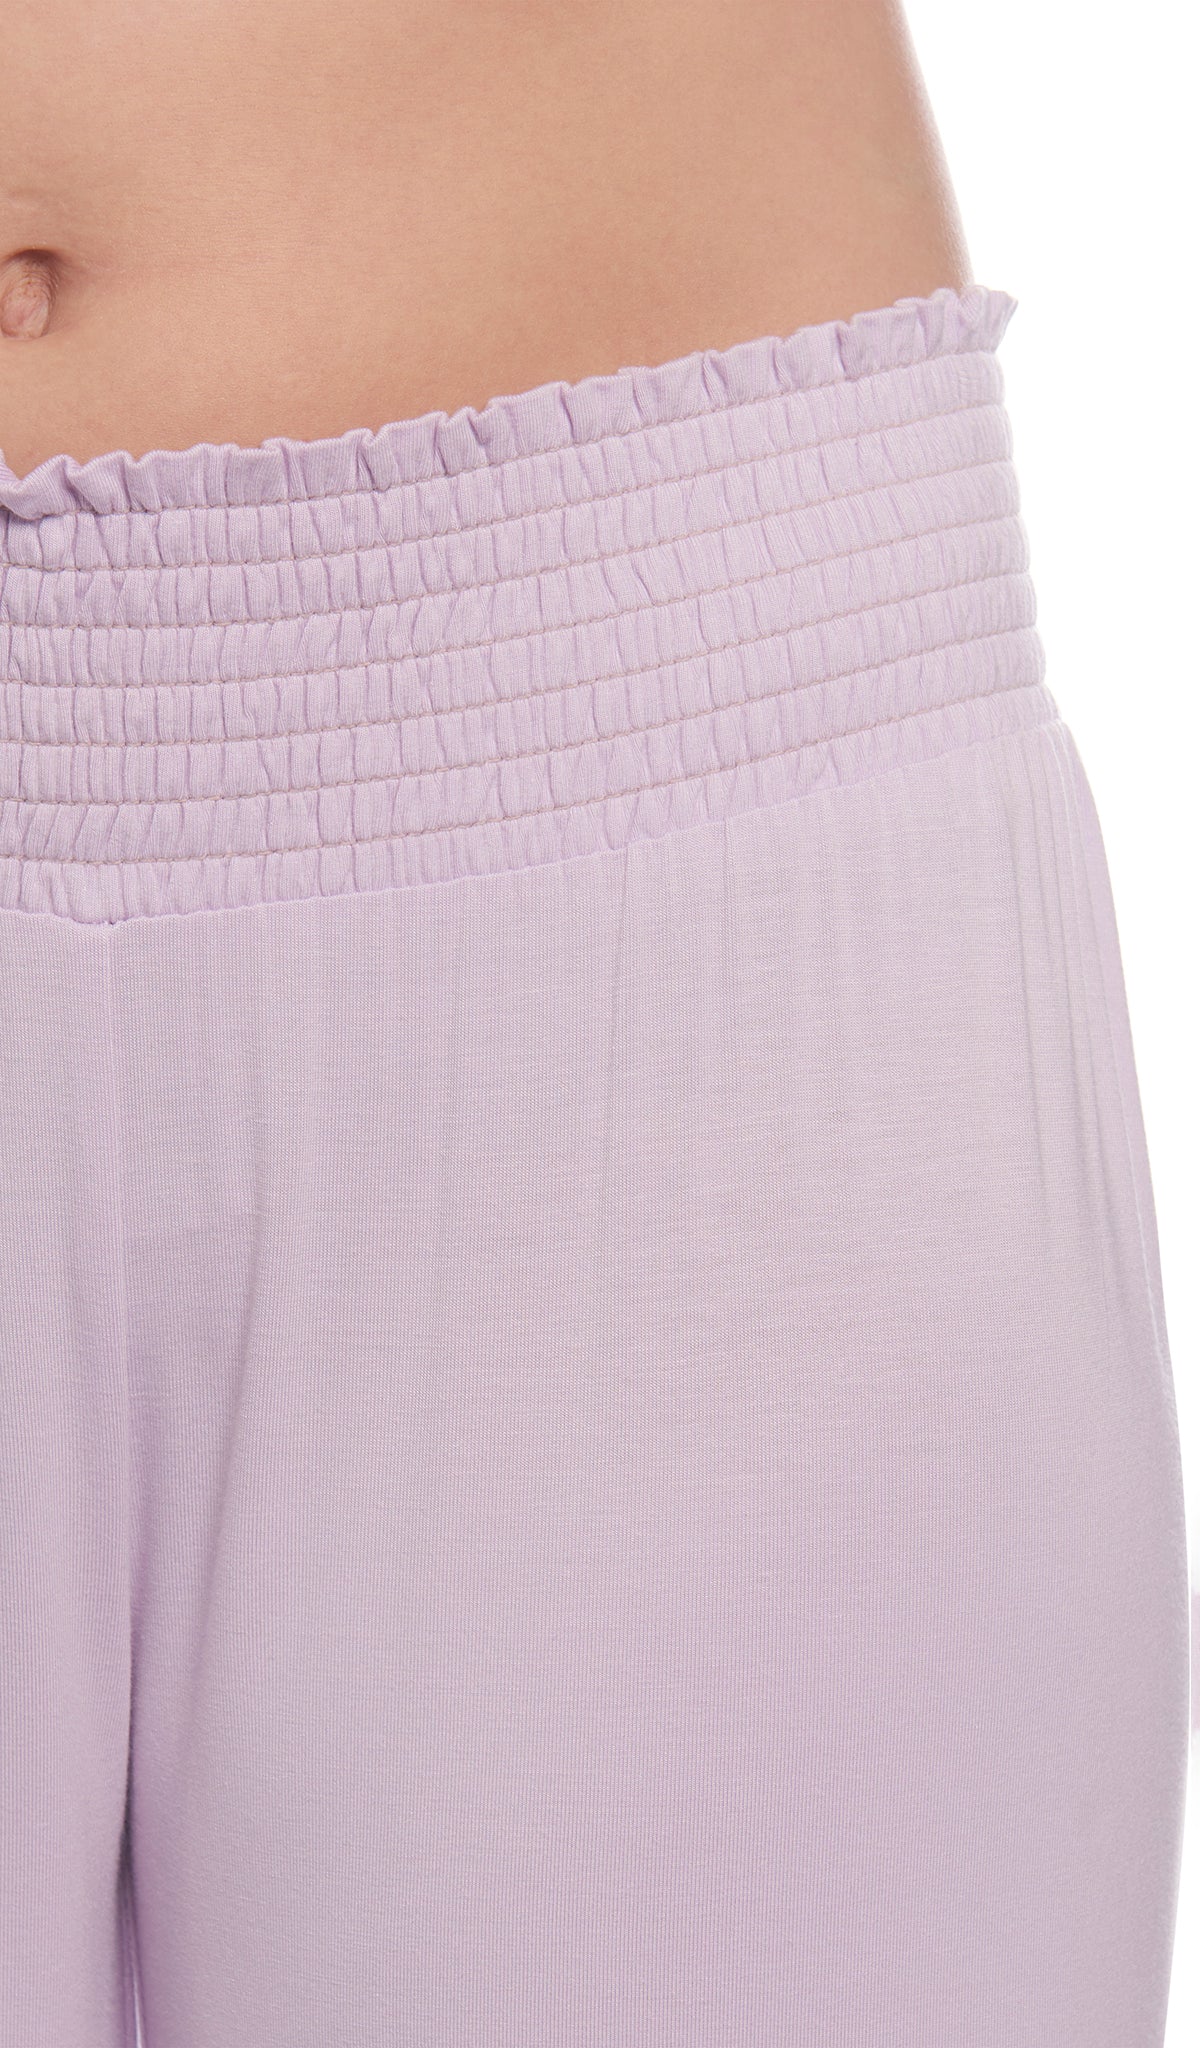 Lavender Analise 3-Piece Set, detailed shot of smocked elastic waistband.